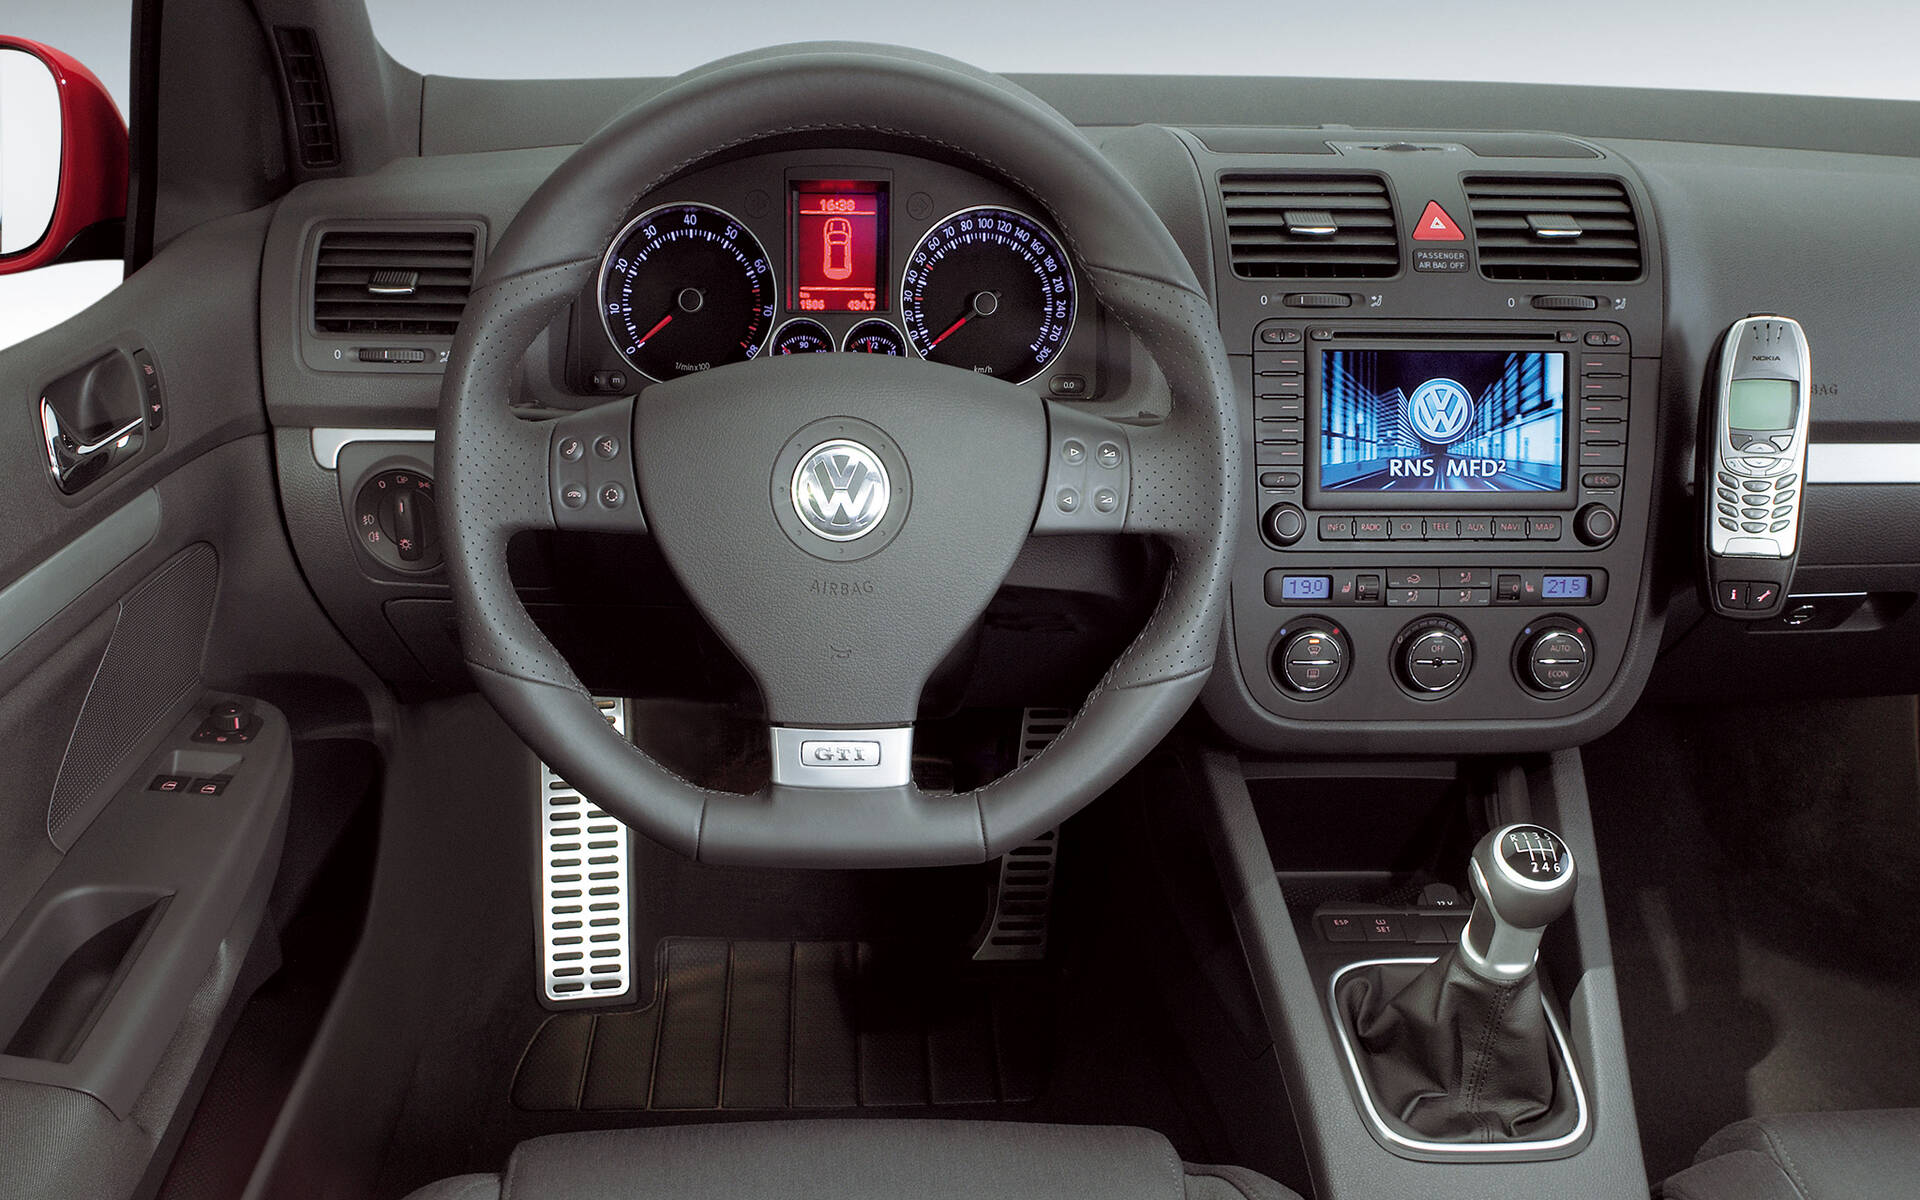 La Volkswagen Golf GTI d’hier à aujourd’hui 504510-la-volkswagen-golf-gti-d-hier-a-aujourd-hui